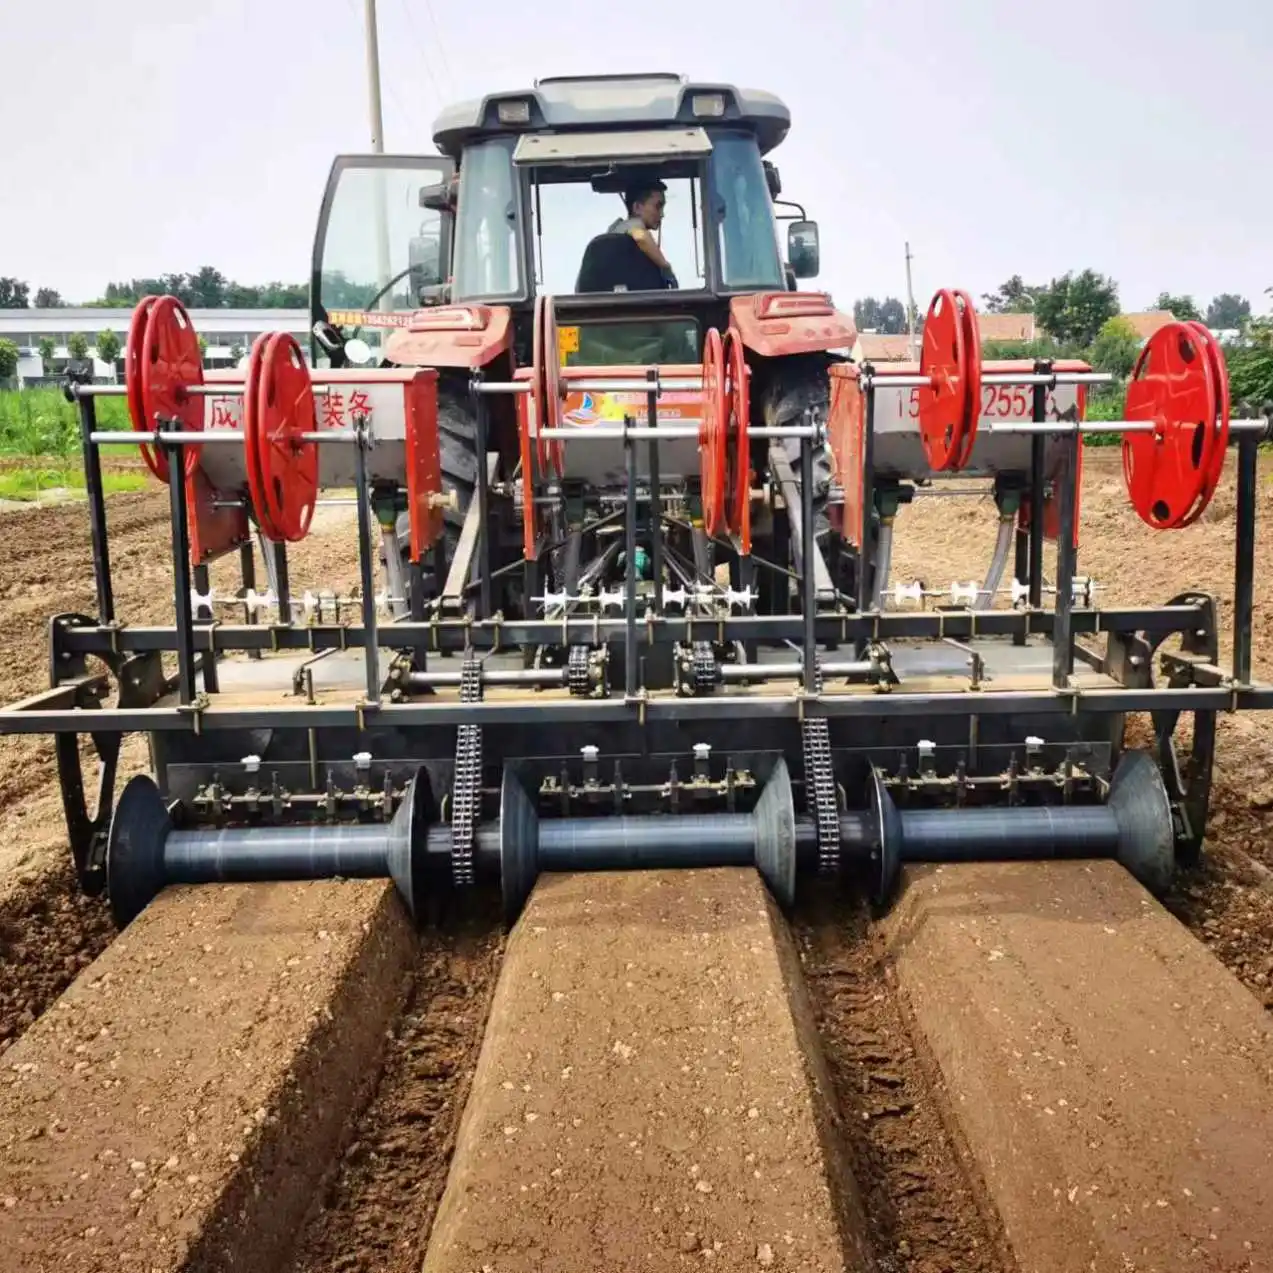 Máquina de sulcar trilhos de trator agrícola de melhor qualidade, máquina de sulcar trilhos de 1 a 3 linhas, para uso agrícola, com canteiro de solo